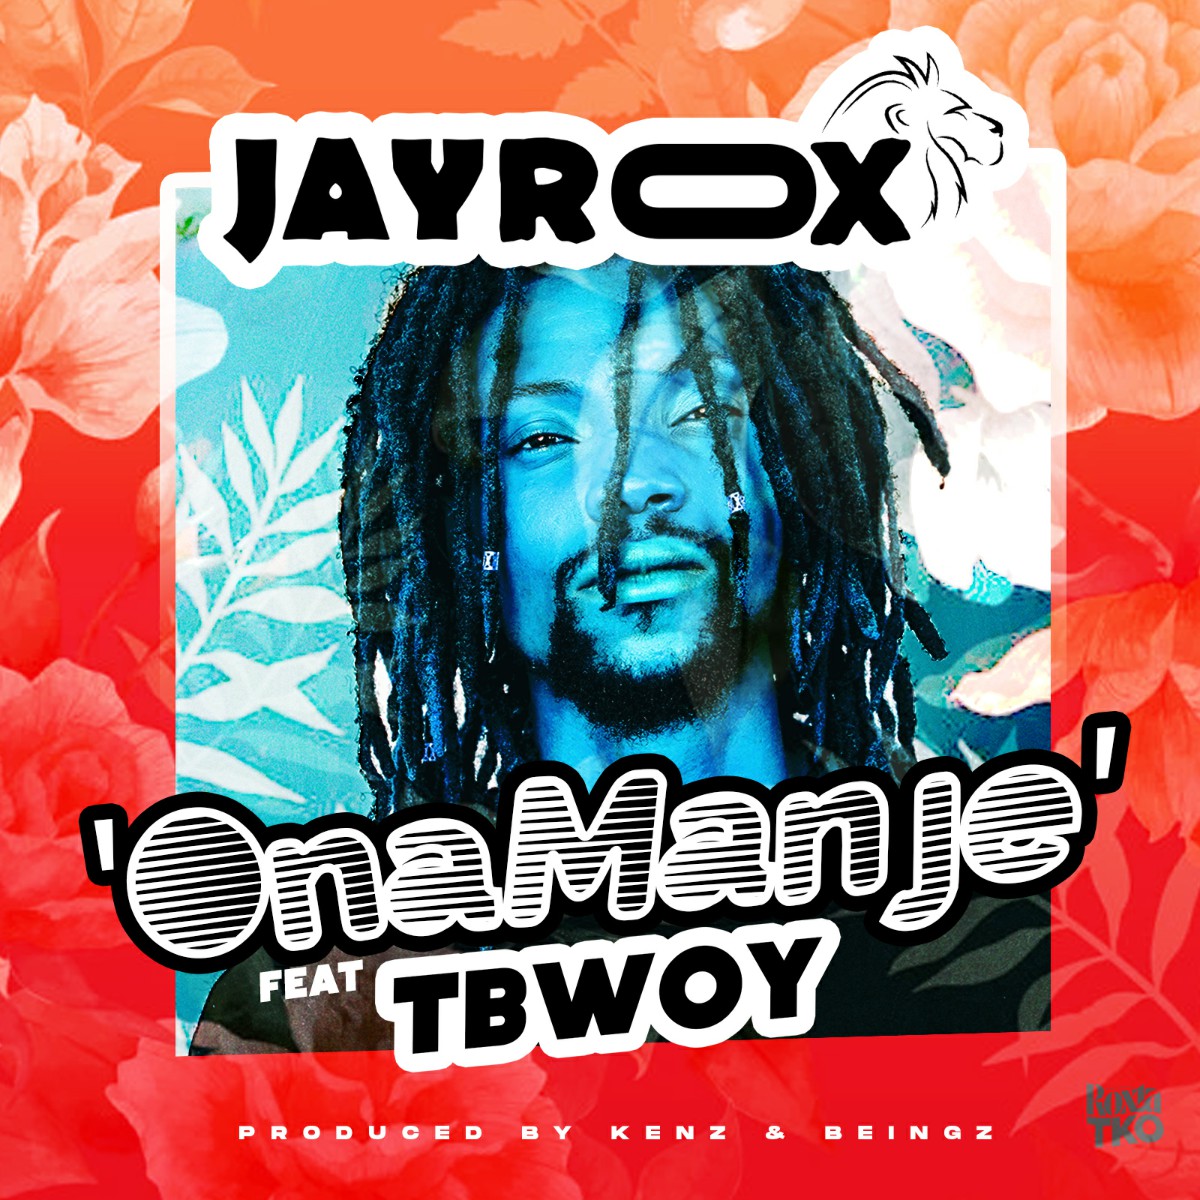 Jay Rox ft. Tbwoy - Ona Manje (Prod. Kenz & Beingz)